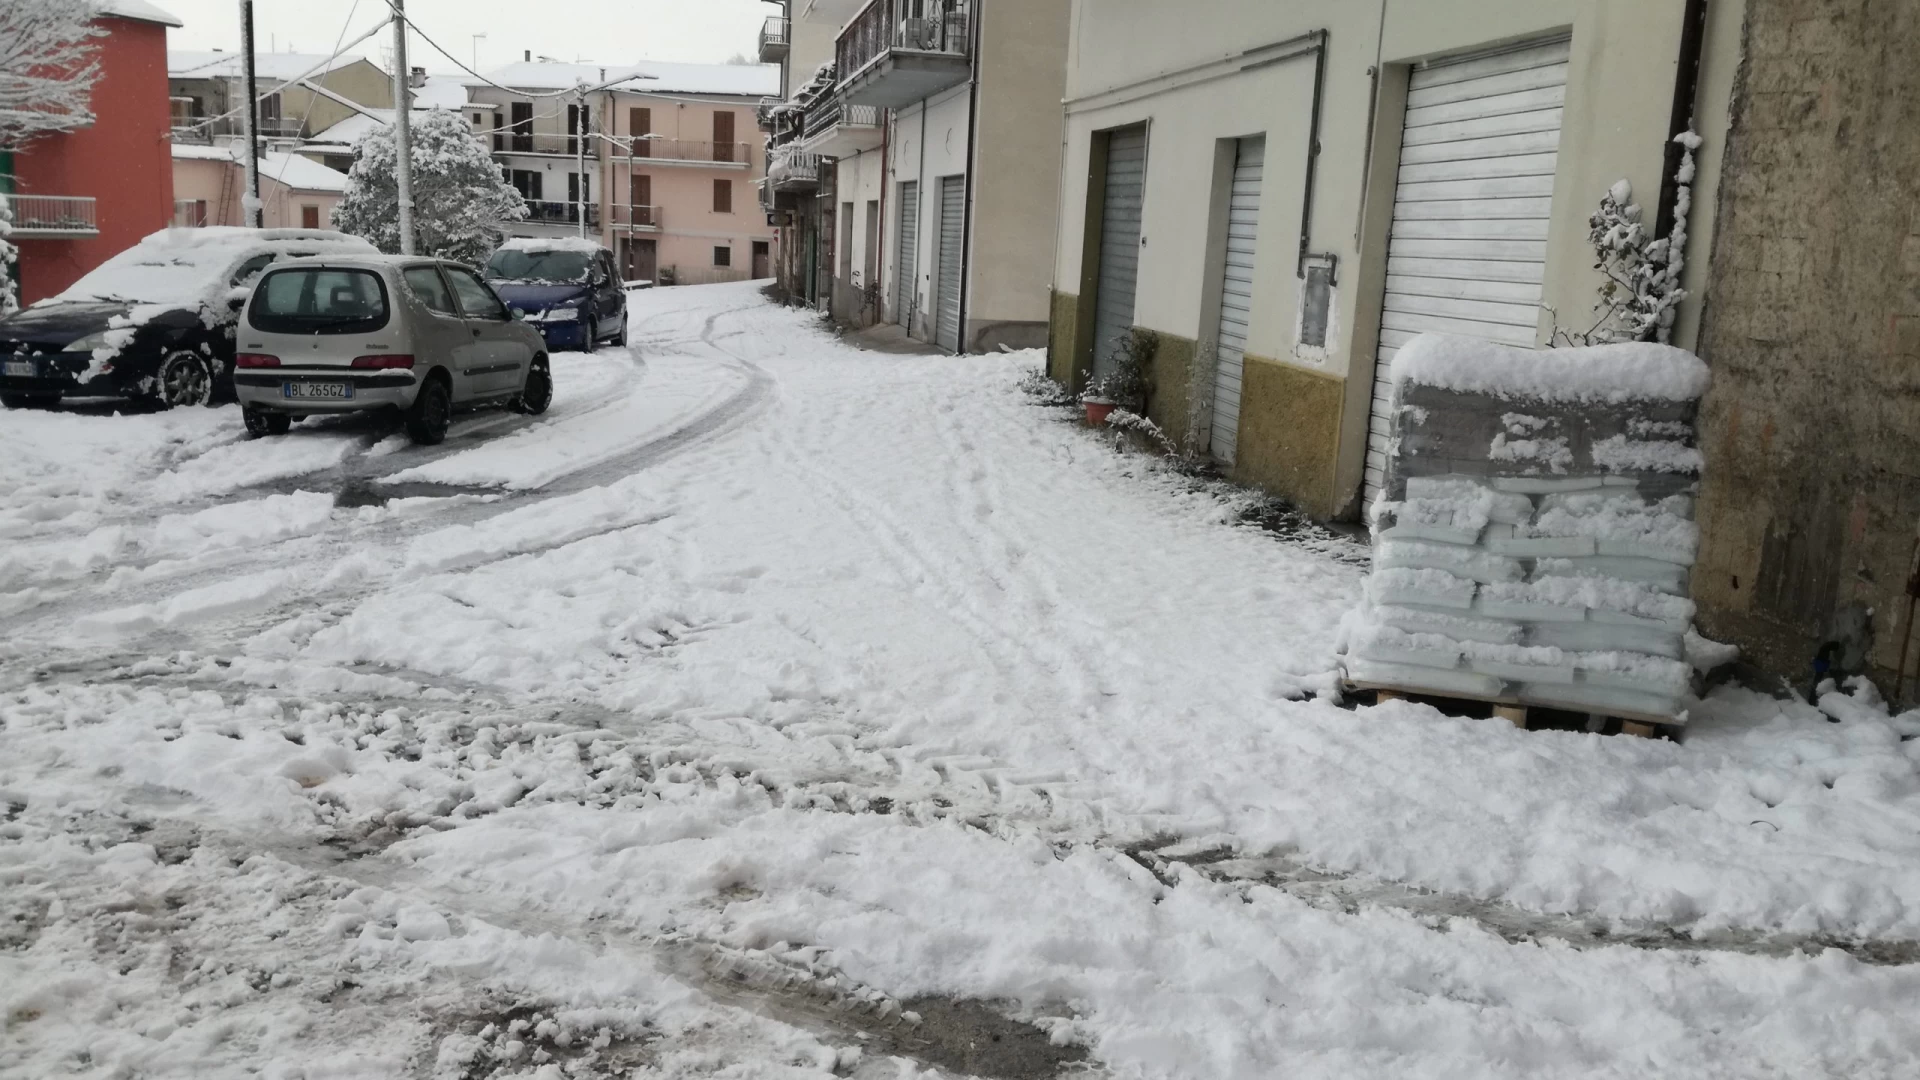 Emergenza neve: diramata allerta meteo tra Abruzzo e Molise per le prossime 24-30 ore. Ha ripreso  a nevicare quasi dappertutto. Guarda il video.